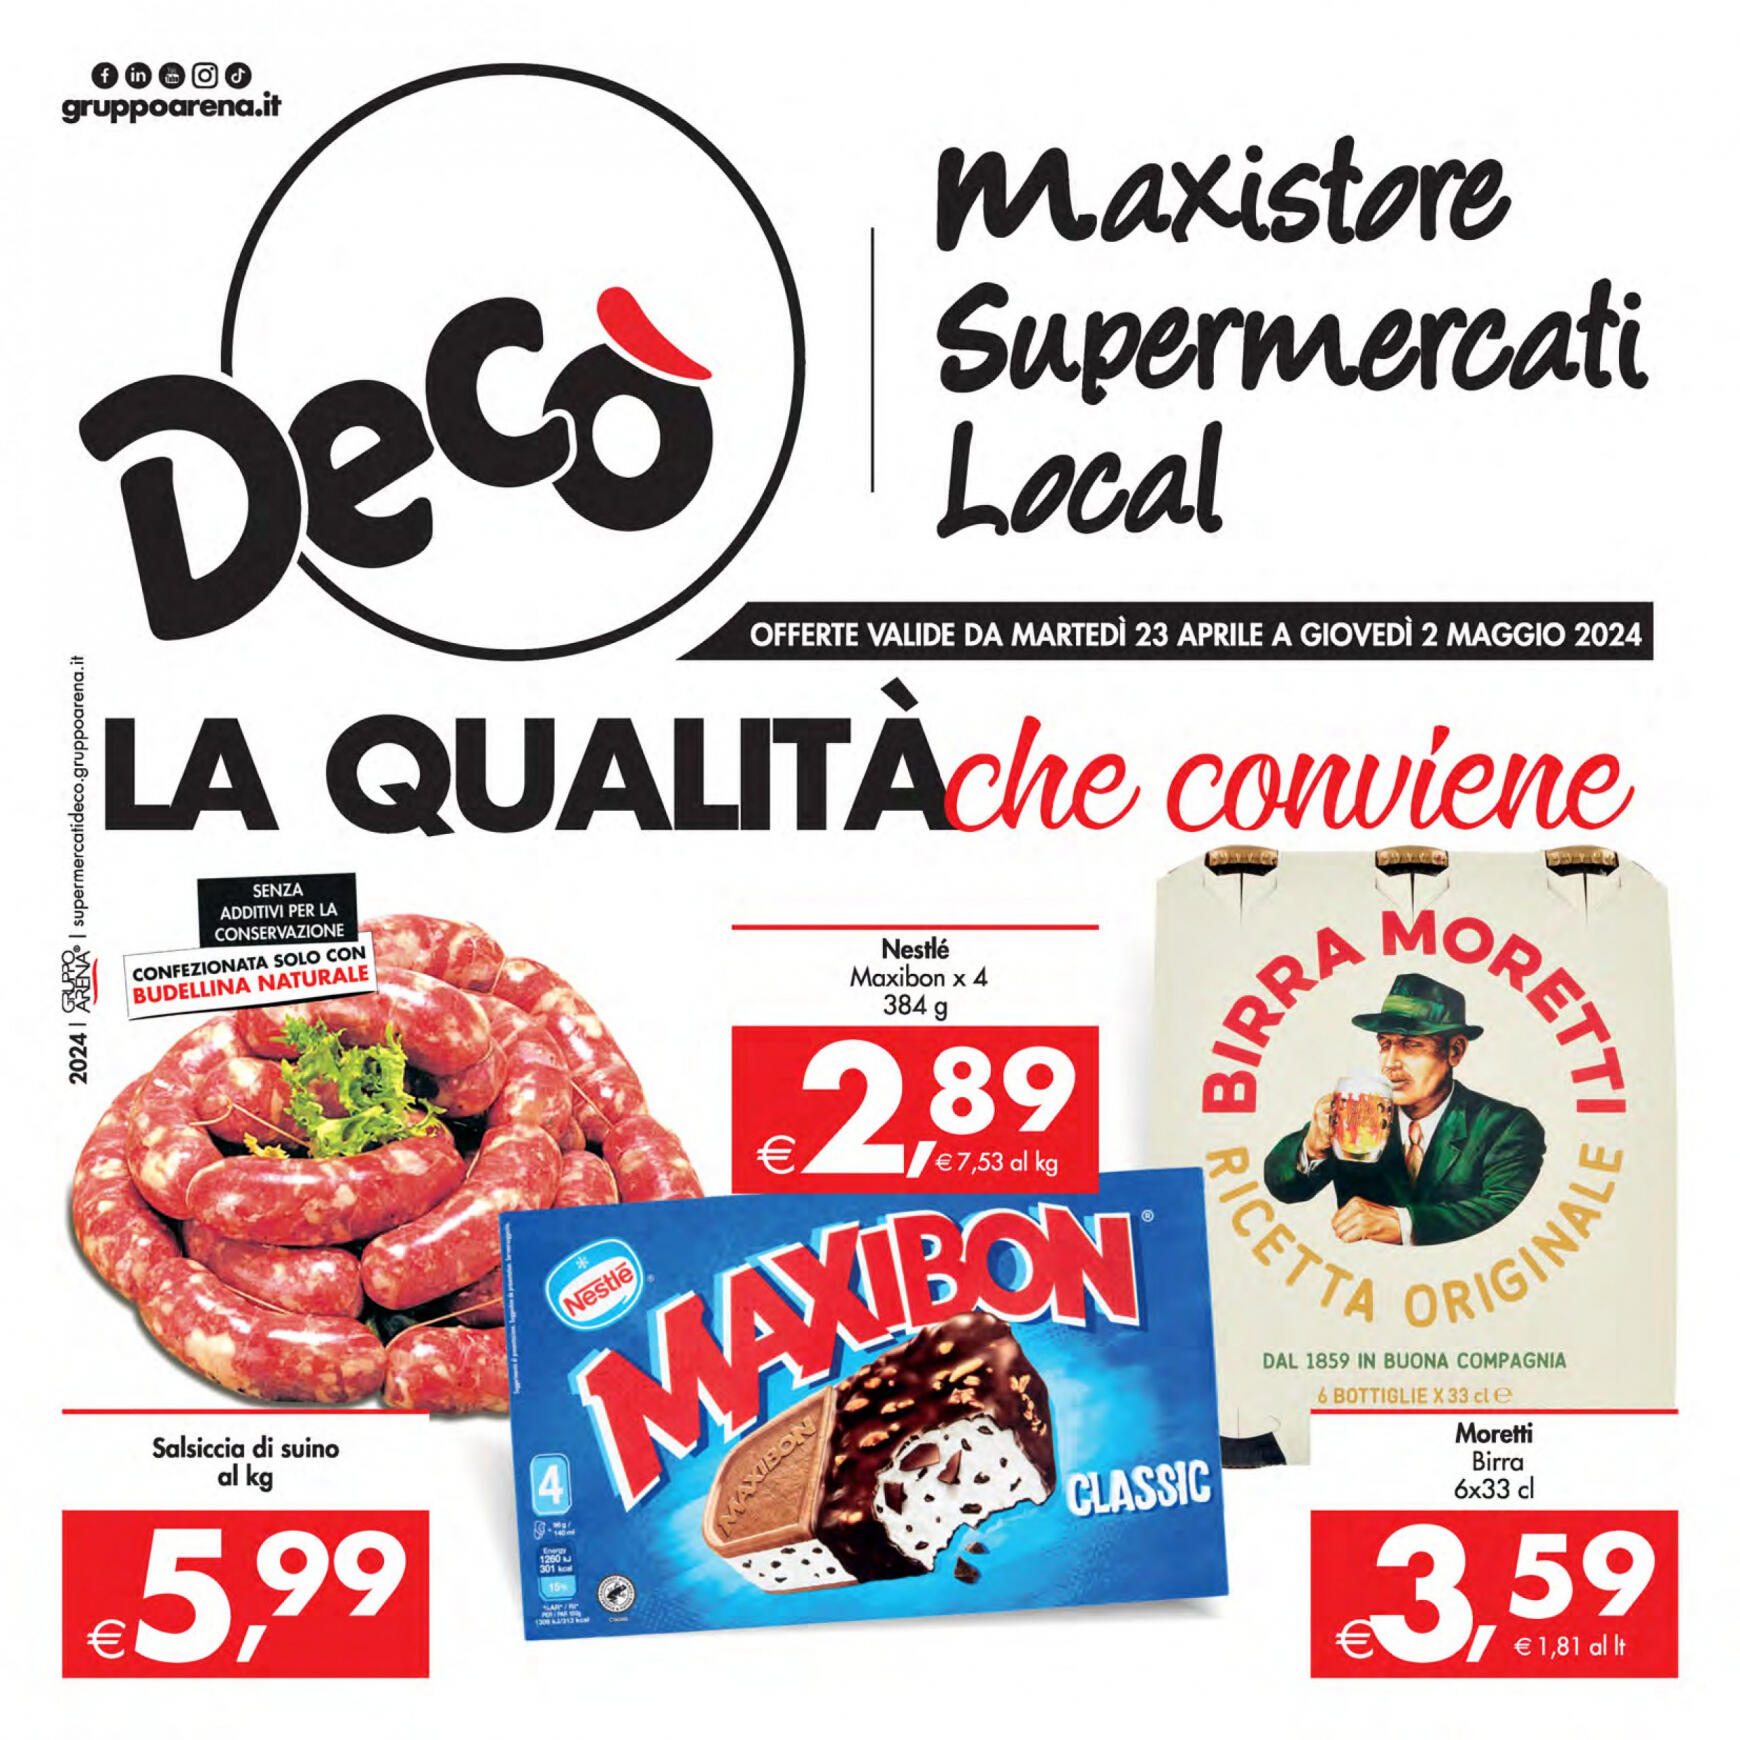 deco - Nuovo volantino Decò - Supermercati/Maxistore/Local 23.04. - 02.05.